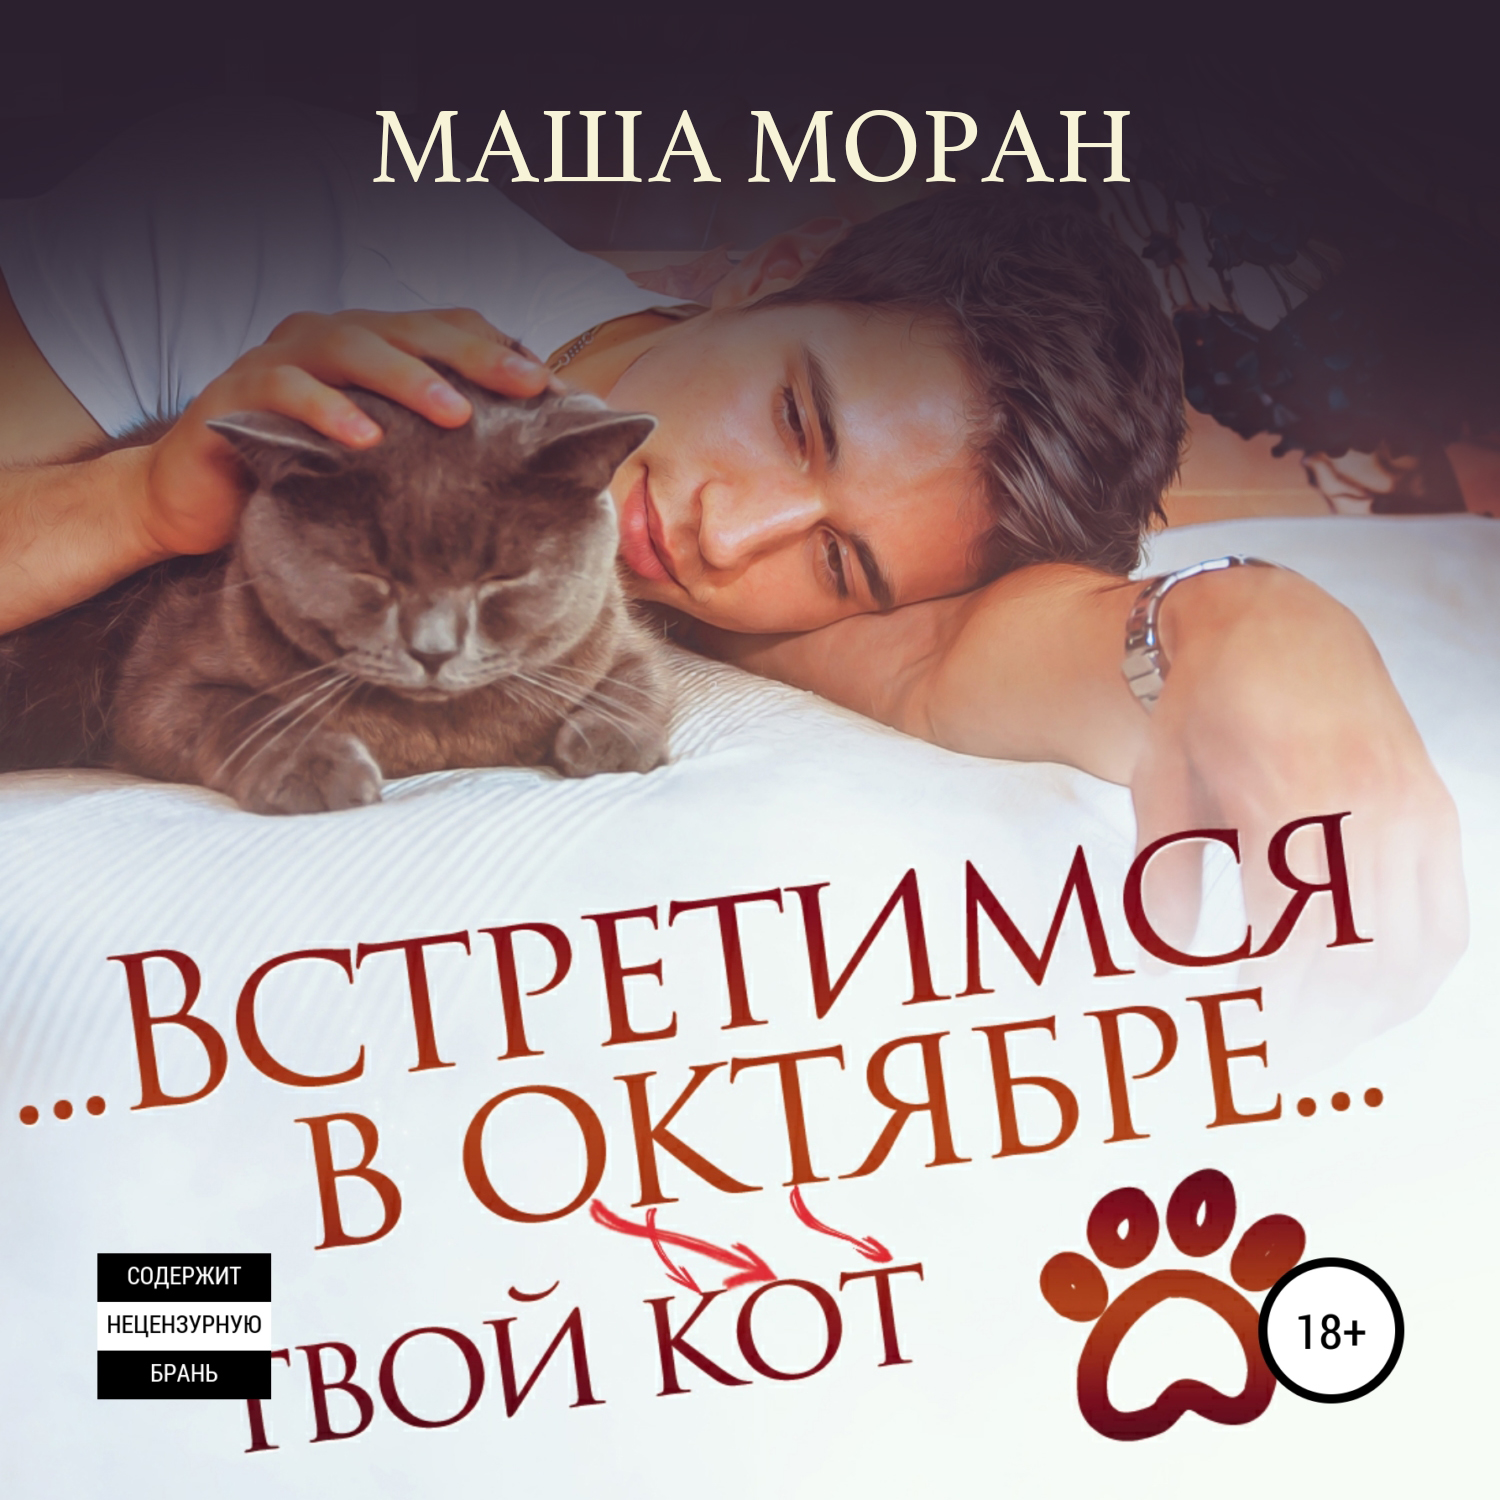 Аудиокниги кот который. Встретимся в октябре твой кот аудиокнига. Маша Моран книги. Маша Моран встретимся в октябре аудиокнига. Маша Моран аудиокниги.